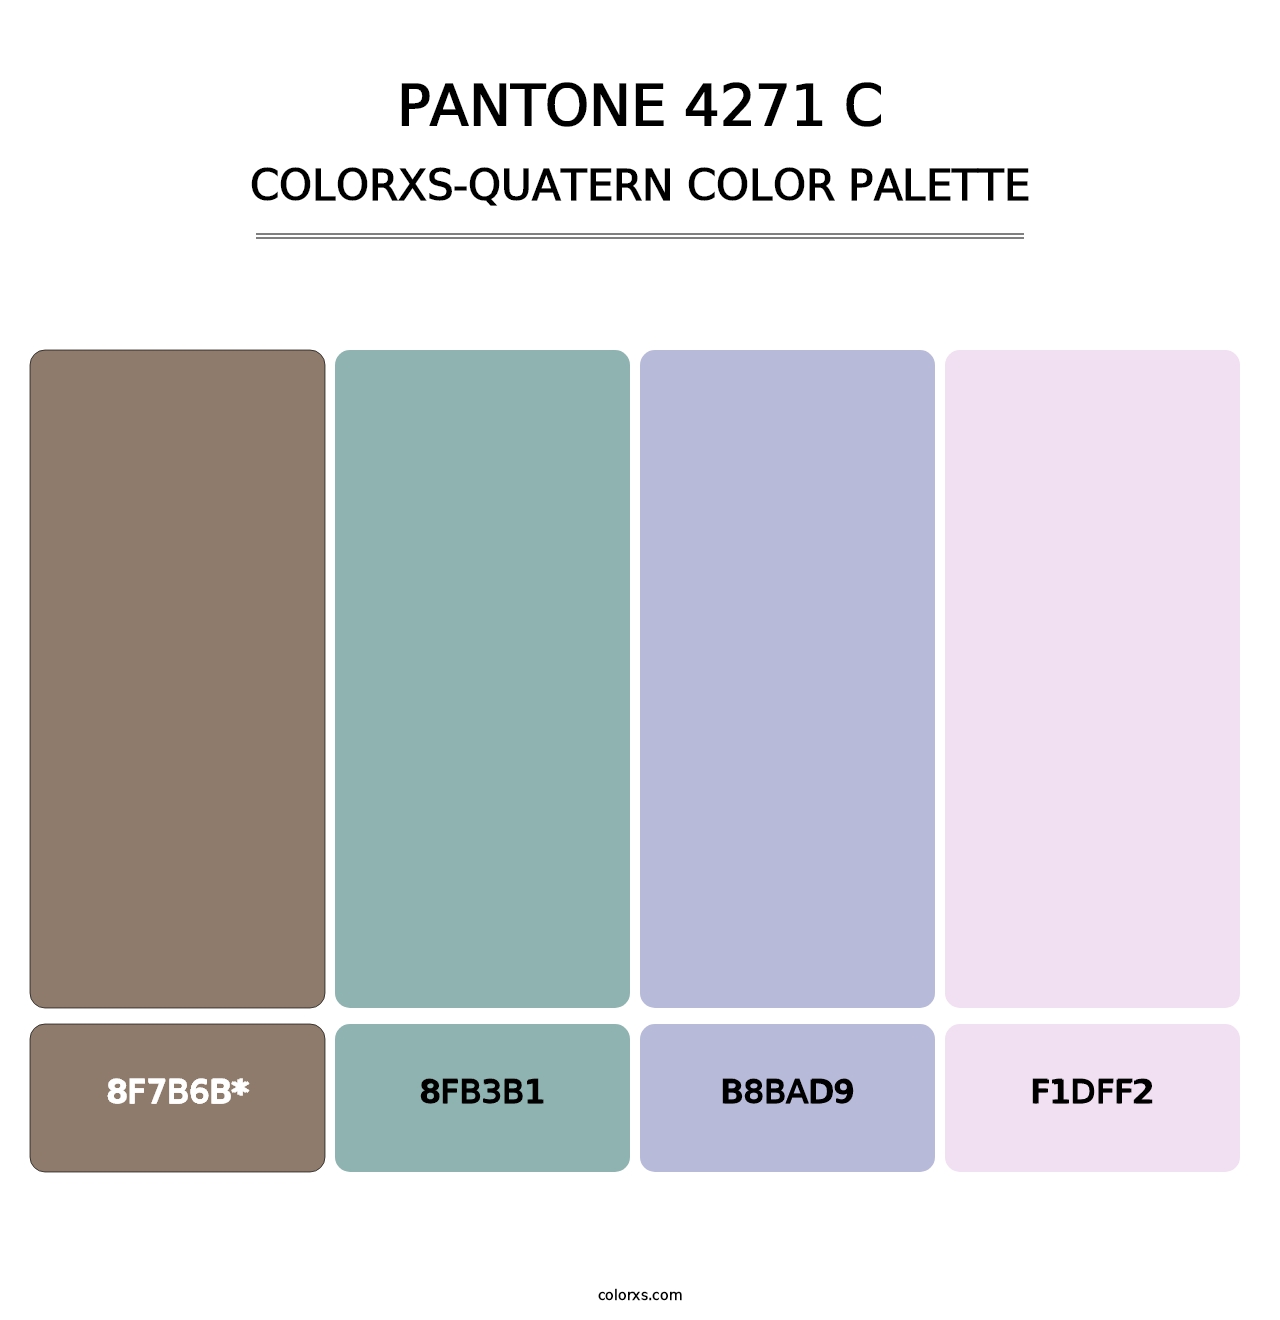 PANTONE 4271 C - Colorxs Quatern Palette